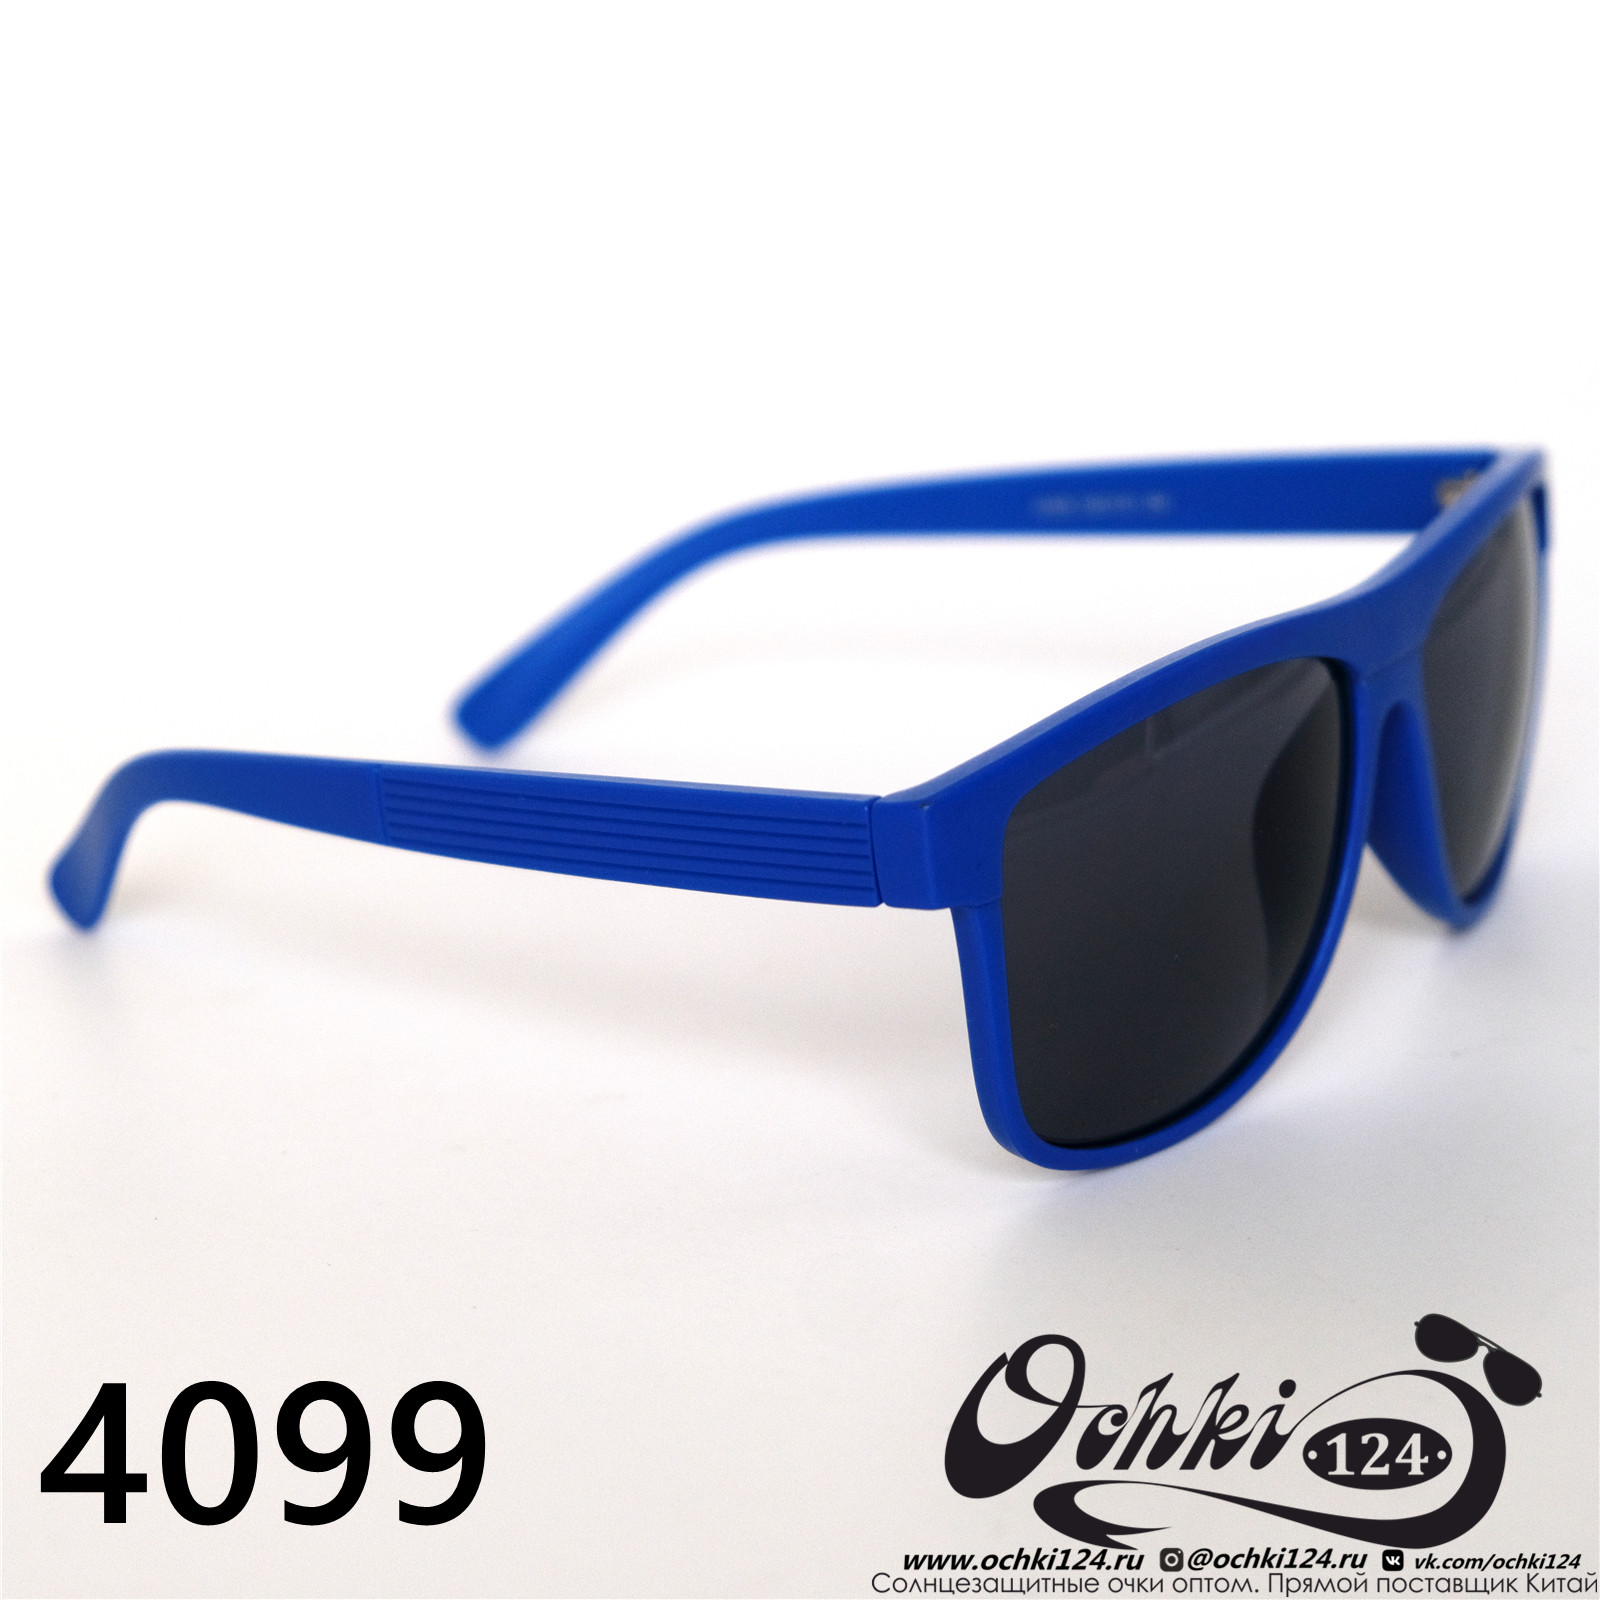  Солнцезащитные очки картинка 2022 Мужские Стандартные Materice 4099-5 